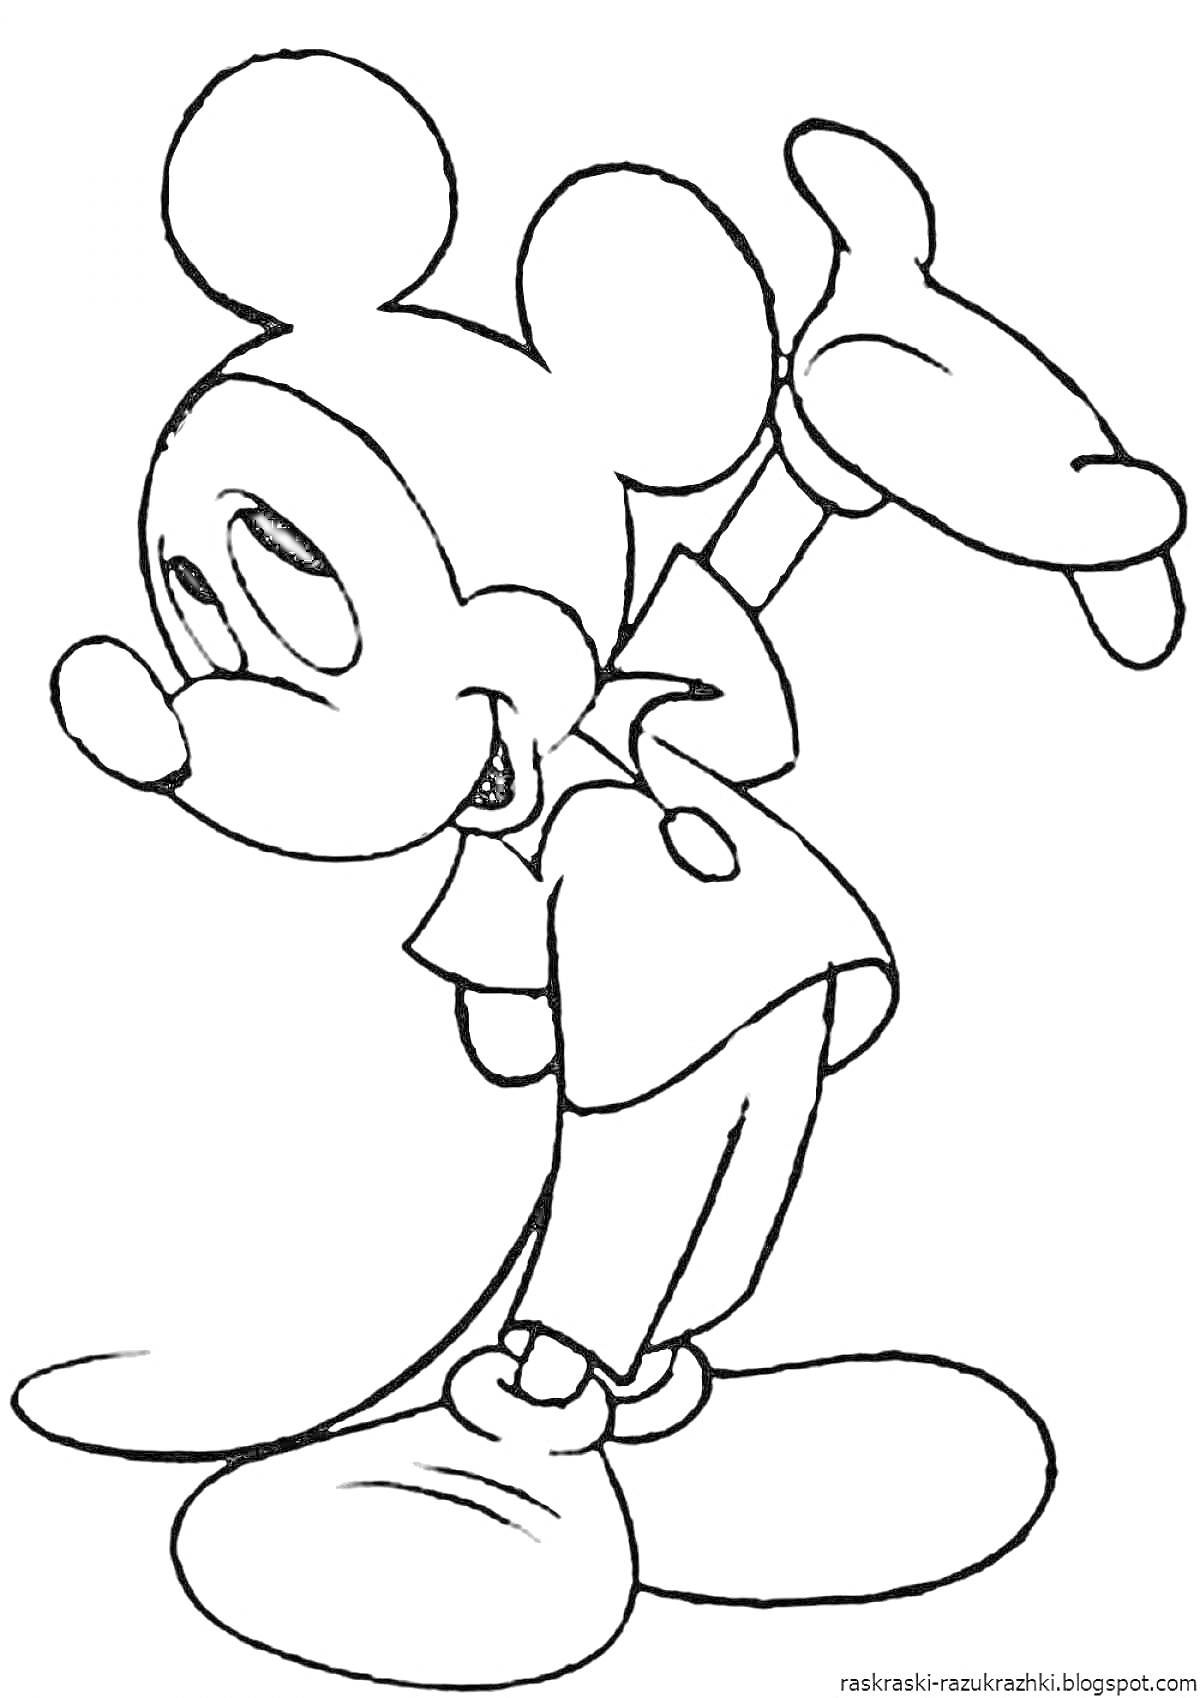 Раскраска Микки Маус делает жест рукой, одет в перчатки, шорты и туфли